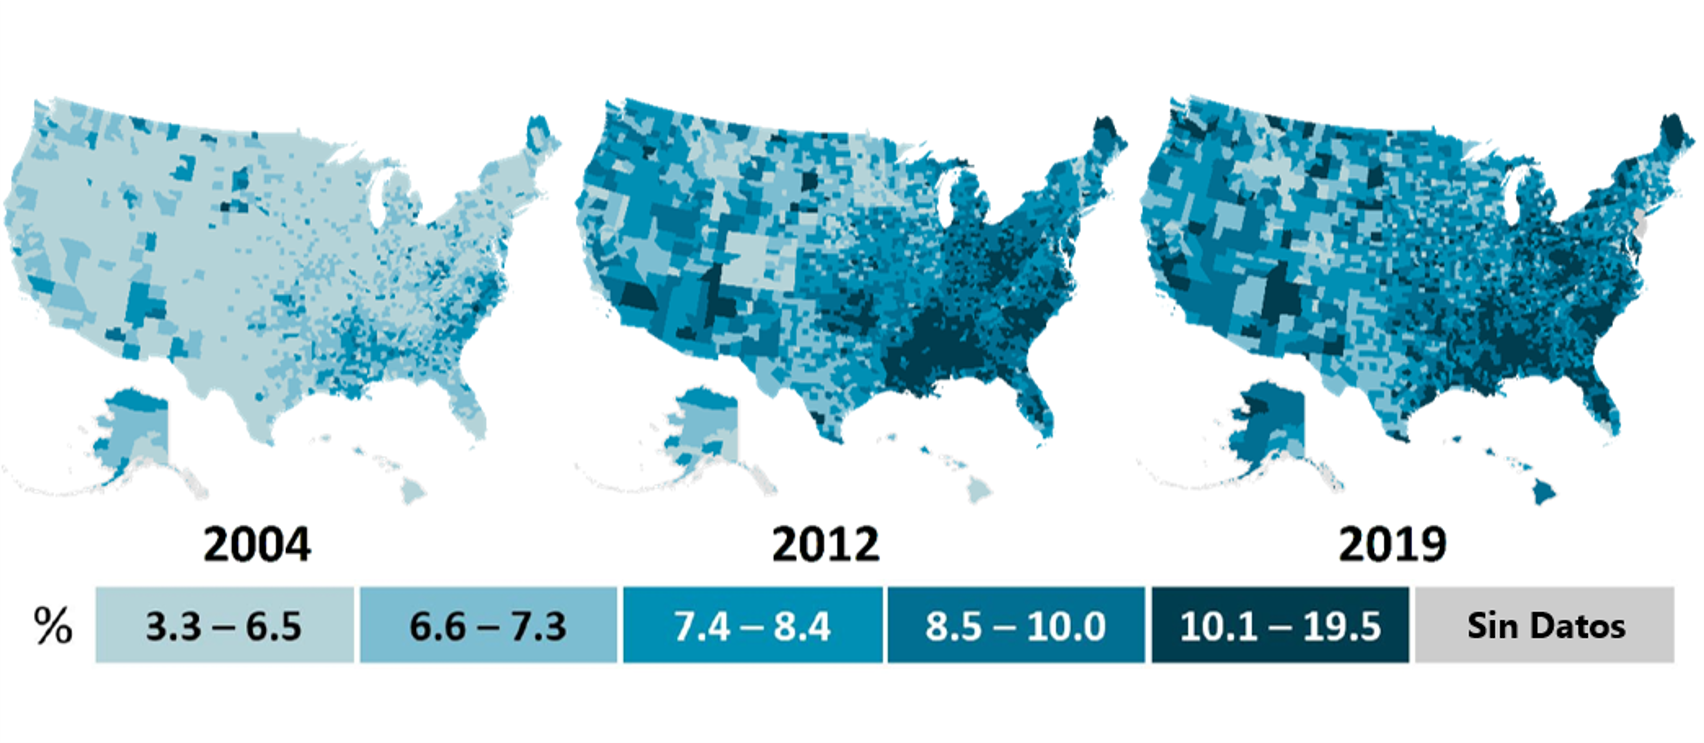 Mapas de los Estados Unidos para los años 2004, 2012 y 2019, que muestran el aumento en la prevalencia de la diabetes diagnosticada a lo largo del tiempo, a nivel de condado, entre los adultos de 20 años o más.